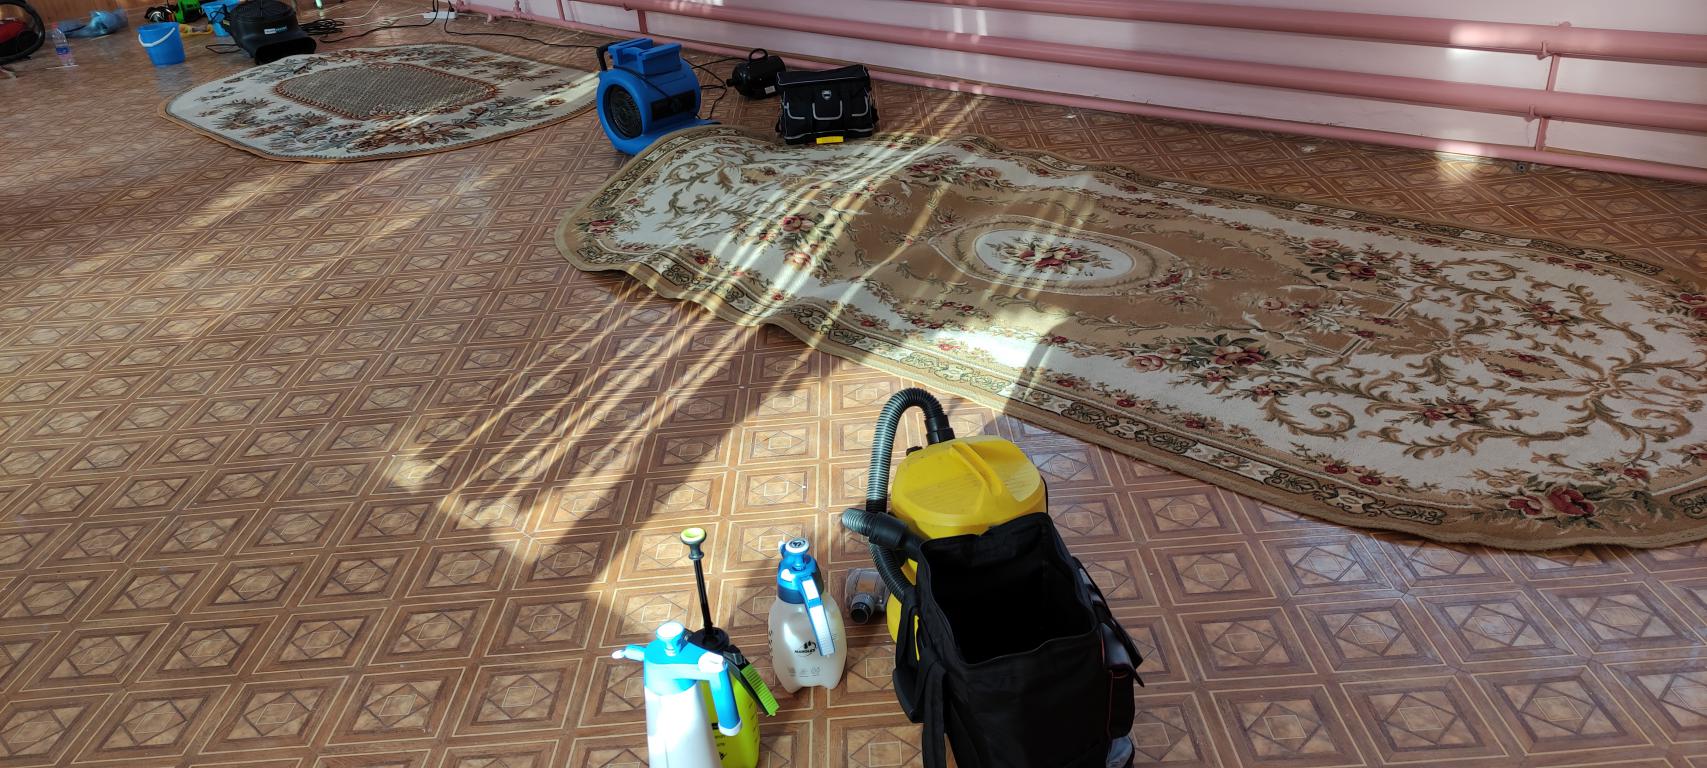 чистка ковров в офисе